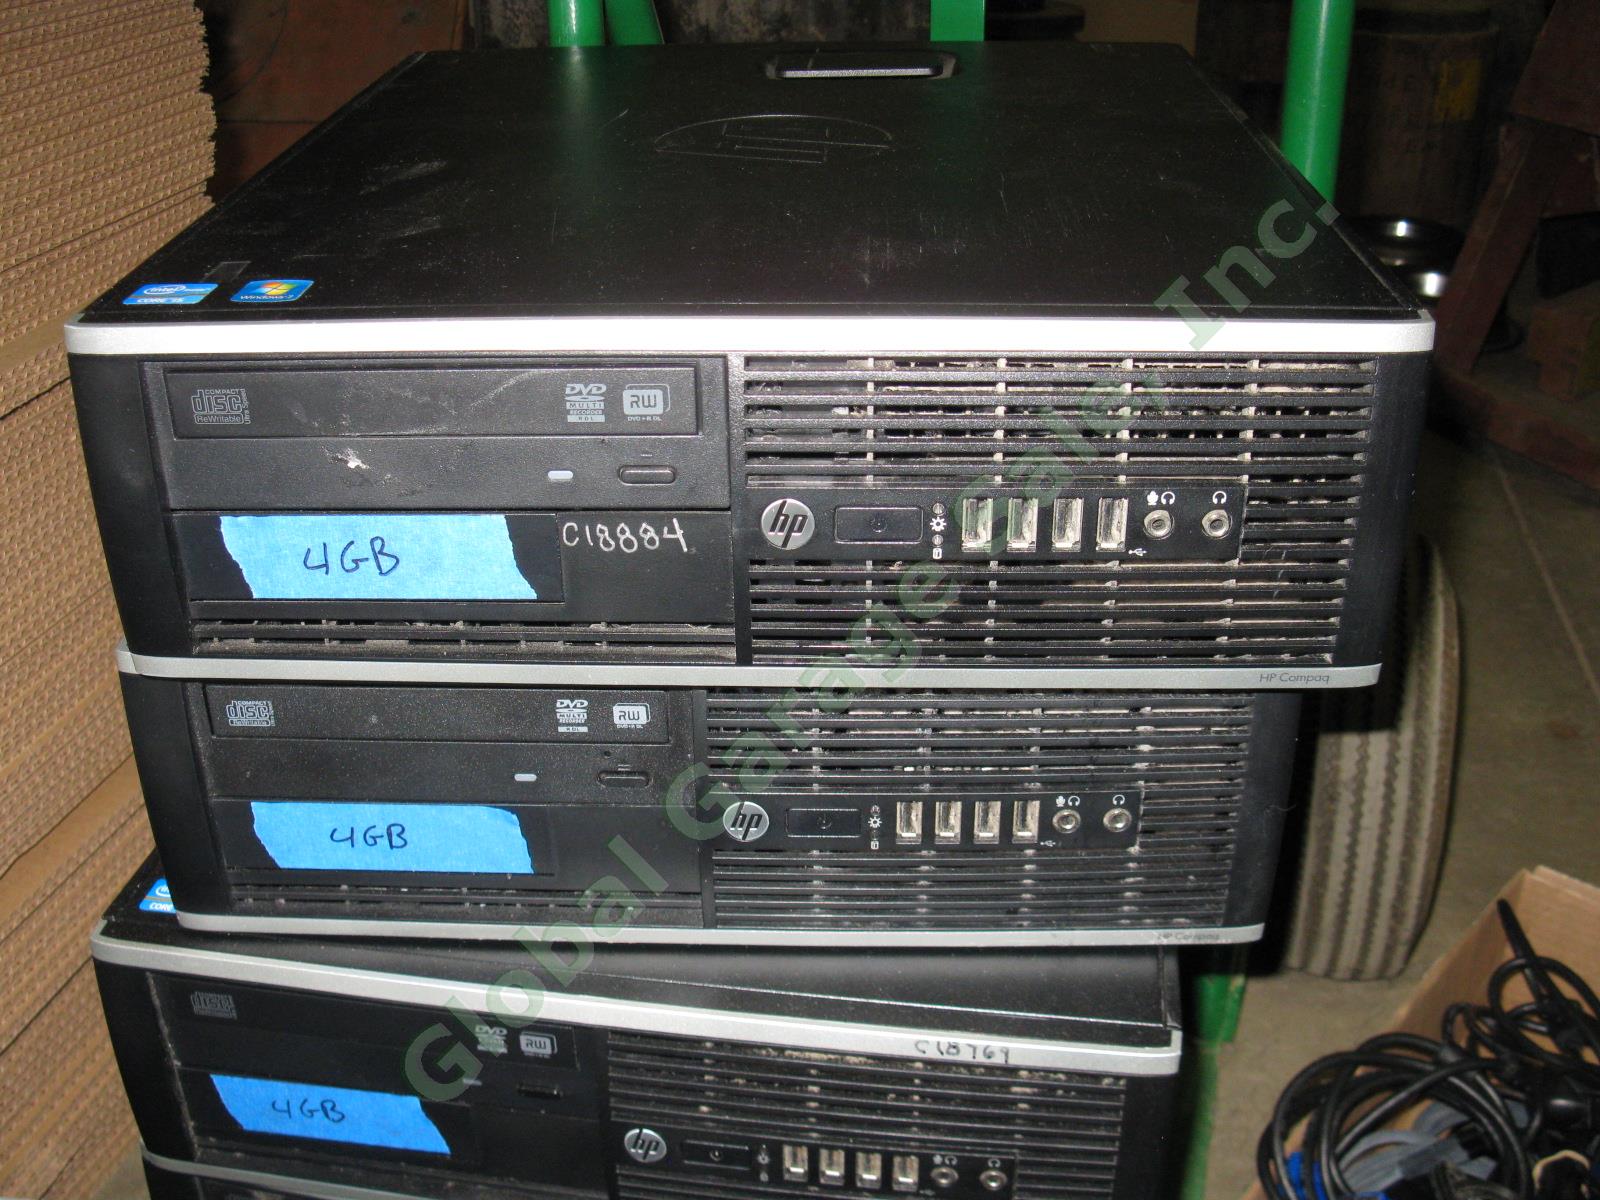 2 HP 6300 Desktop Computers